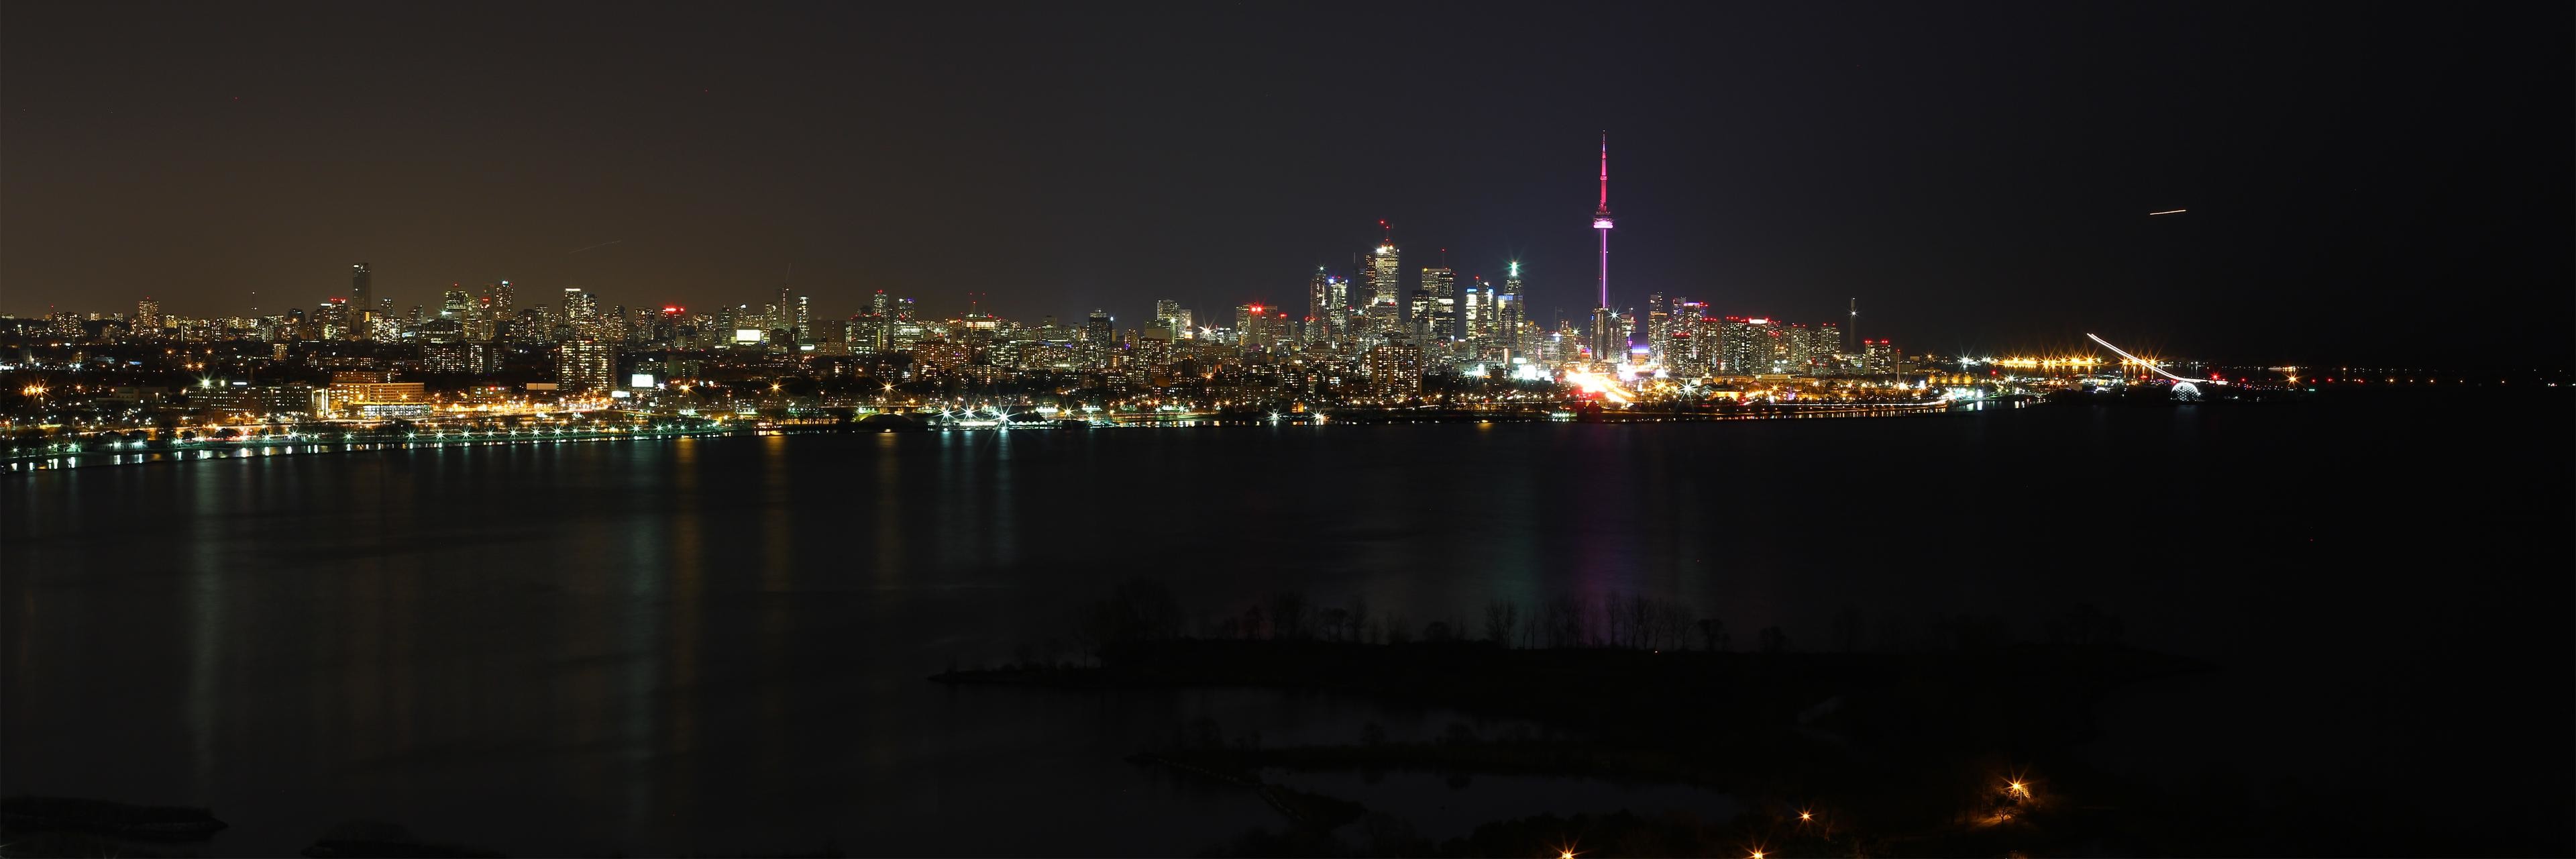 3840x1280 Toronto skyline panorama (dual monitor desktop size) ...